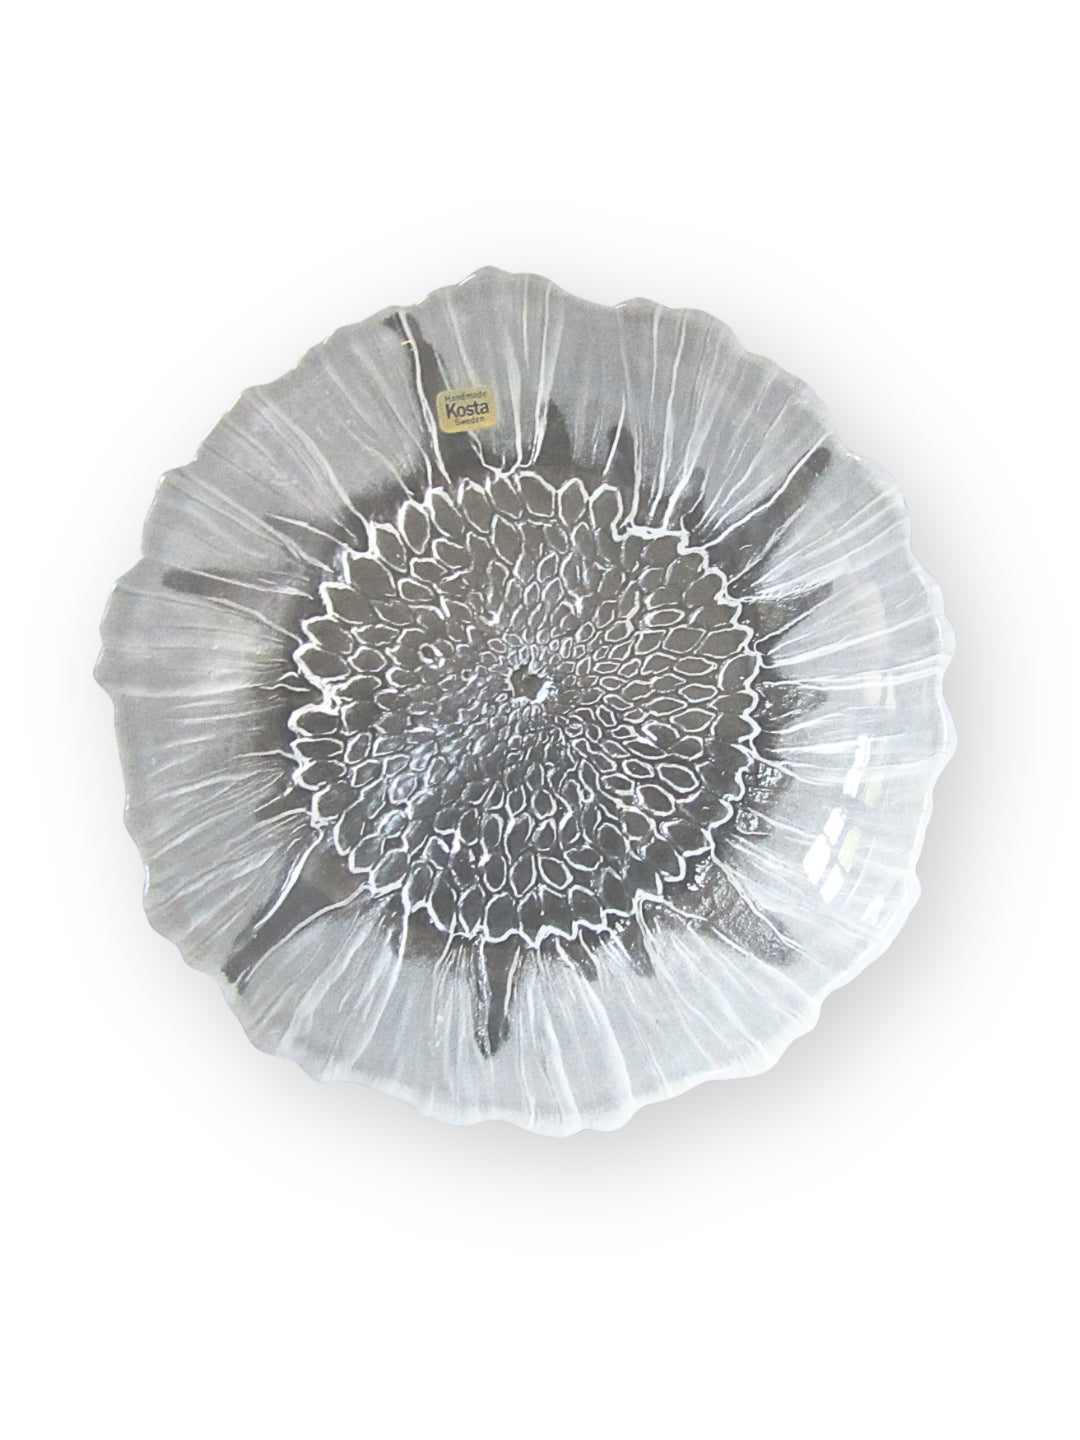 Kosta Boda Teller aus Glas Sunflower Design 1970er Jahre